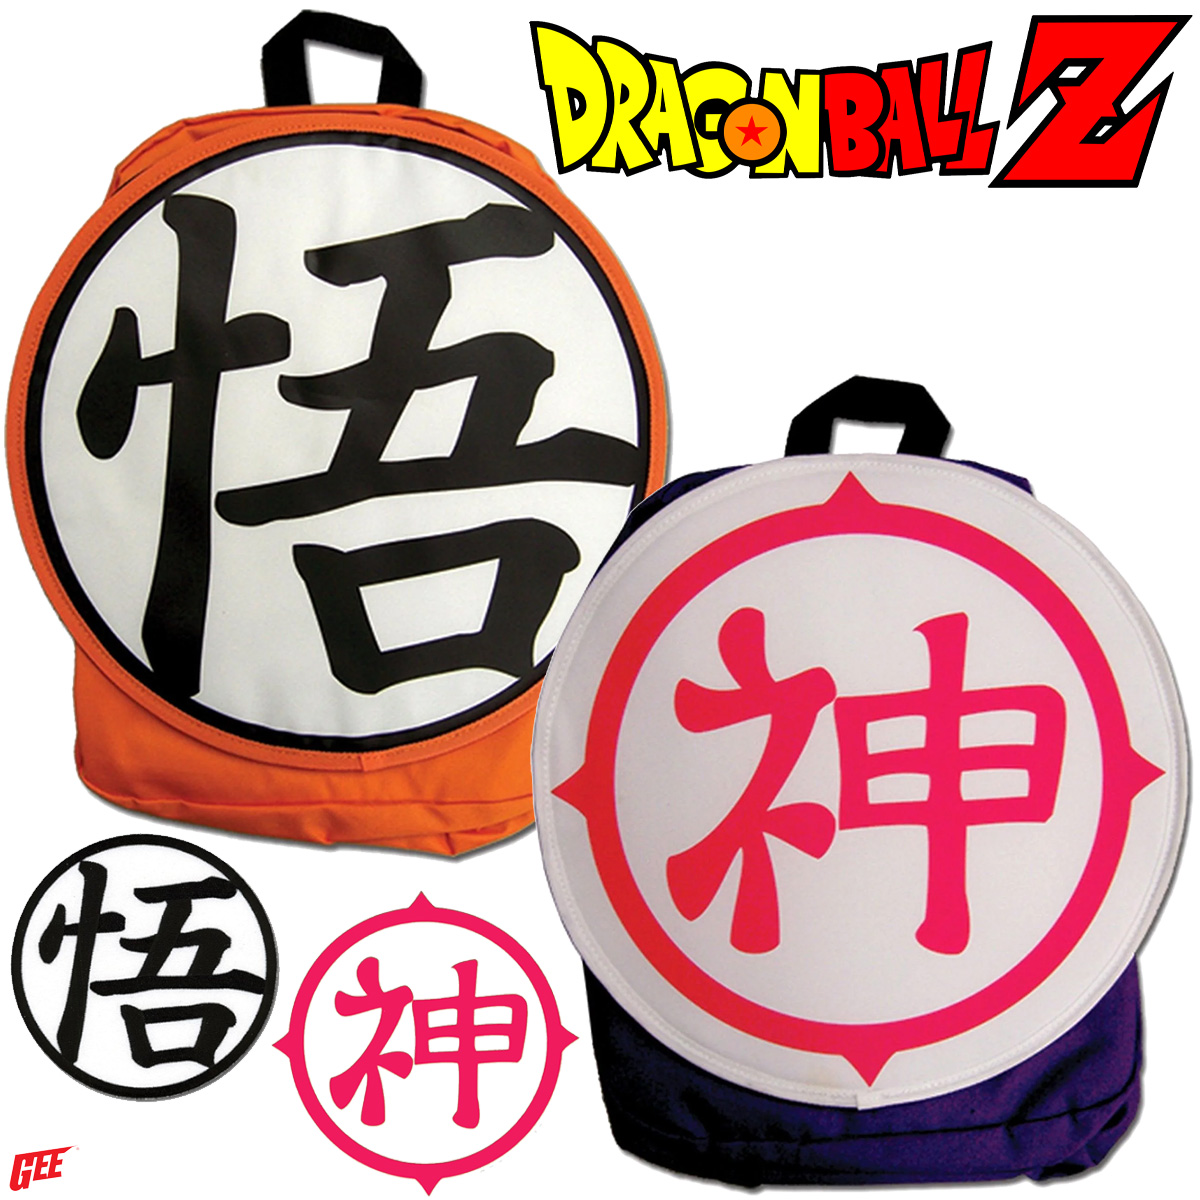 Mochilas Dragon Ball Z com os Kanjis de Goku e Kami